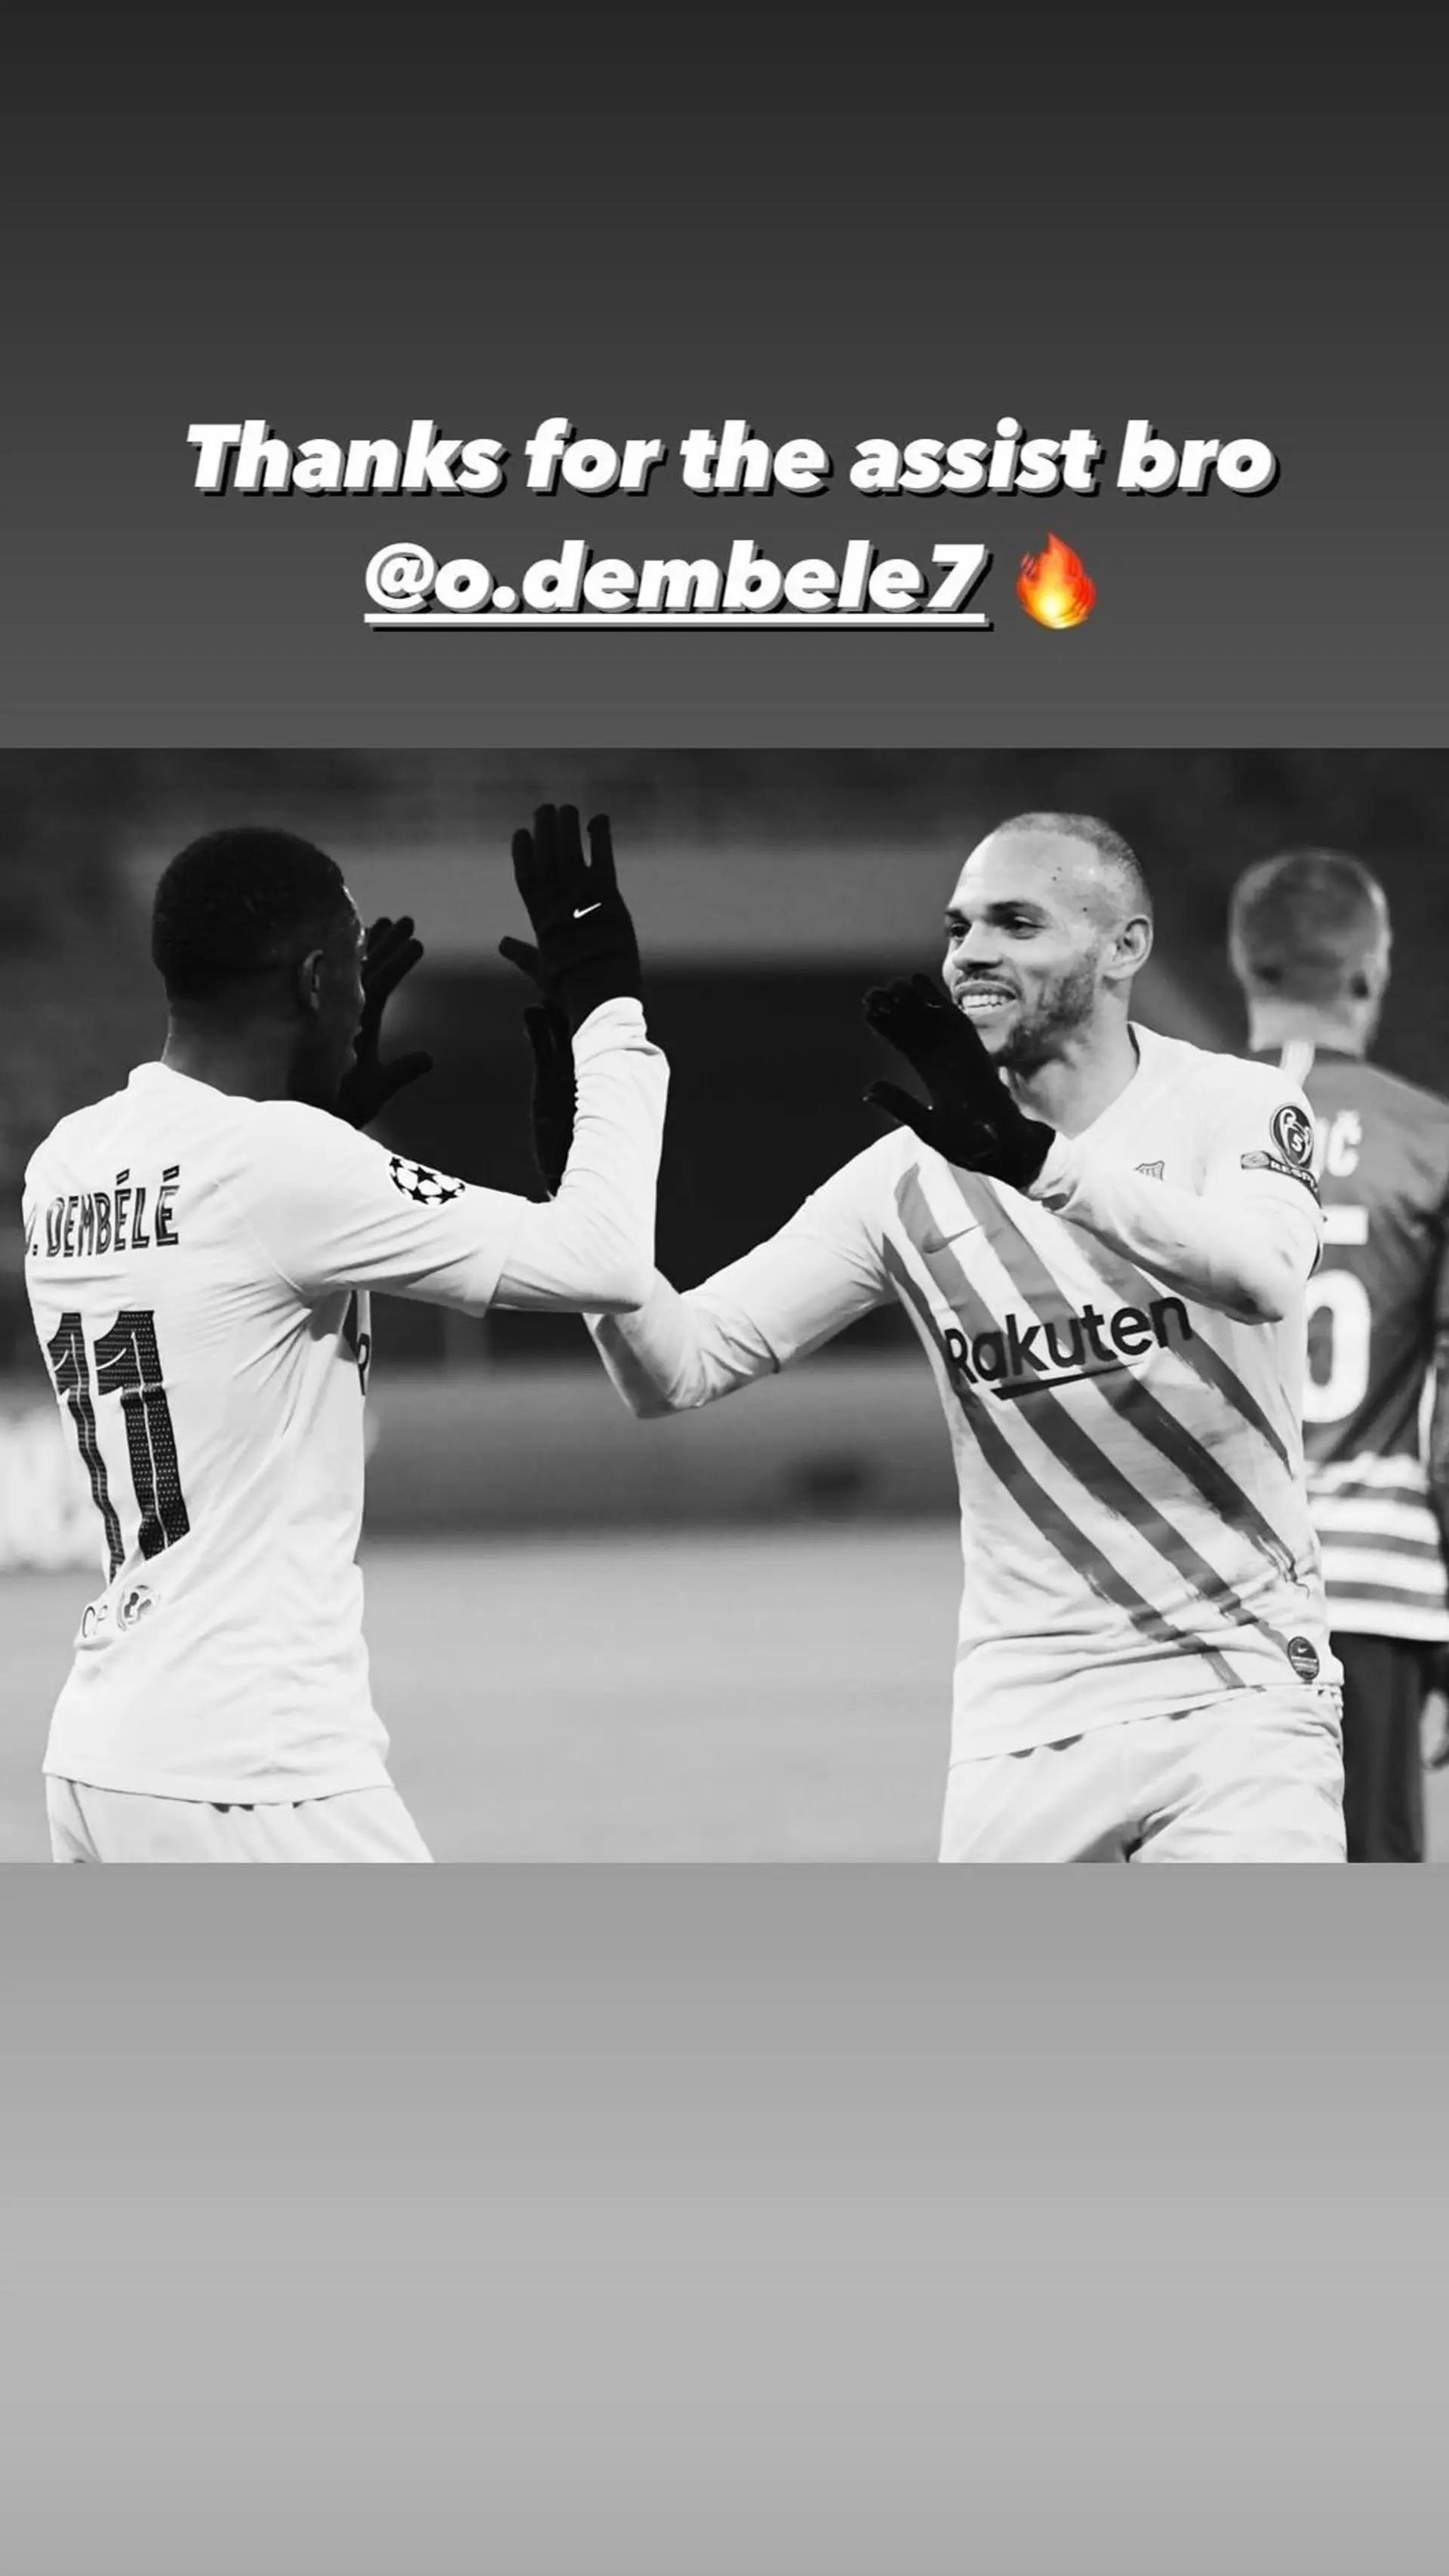 Thanks for the assist bro': Braithwaite goes to Instagram to thank Dembele  for key pass vs Ferencvaros - Football